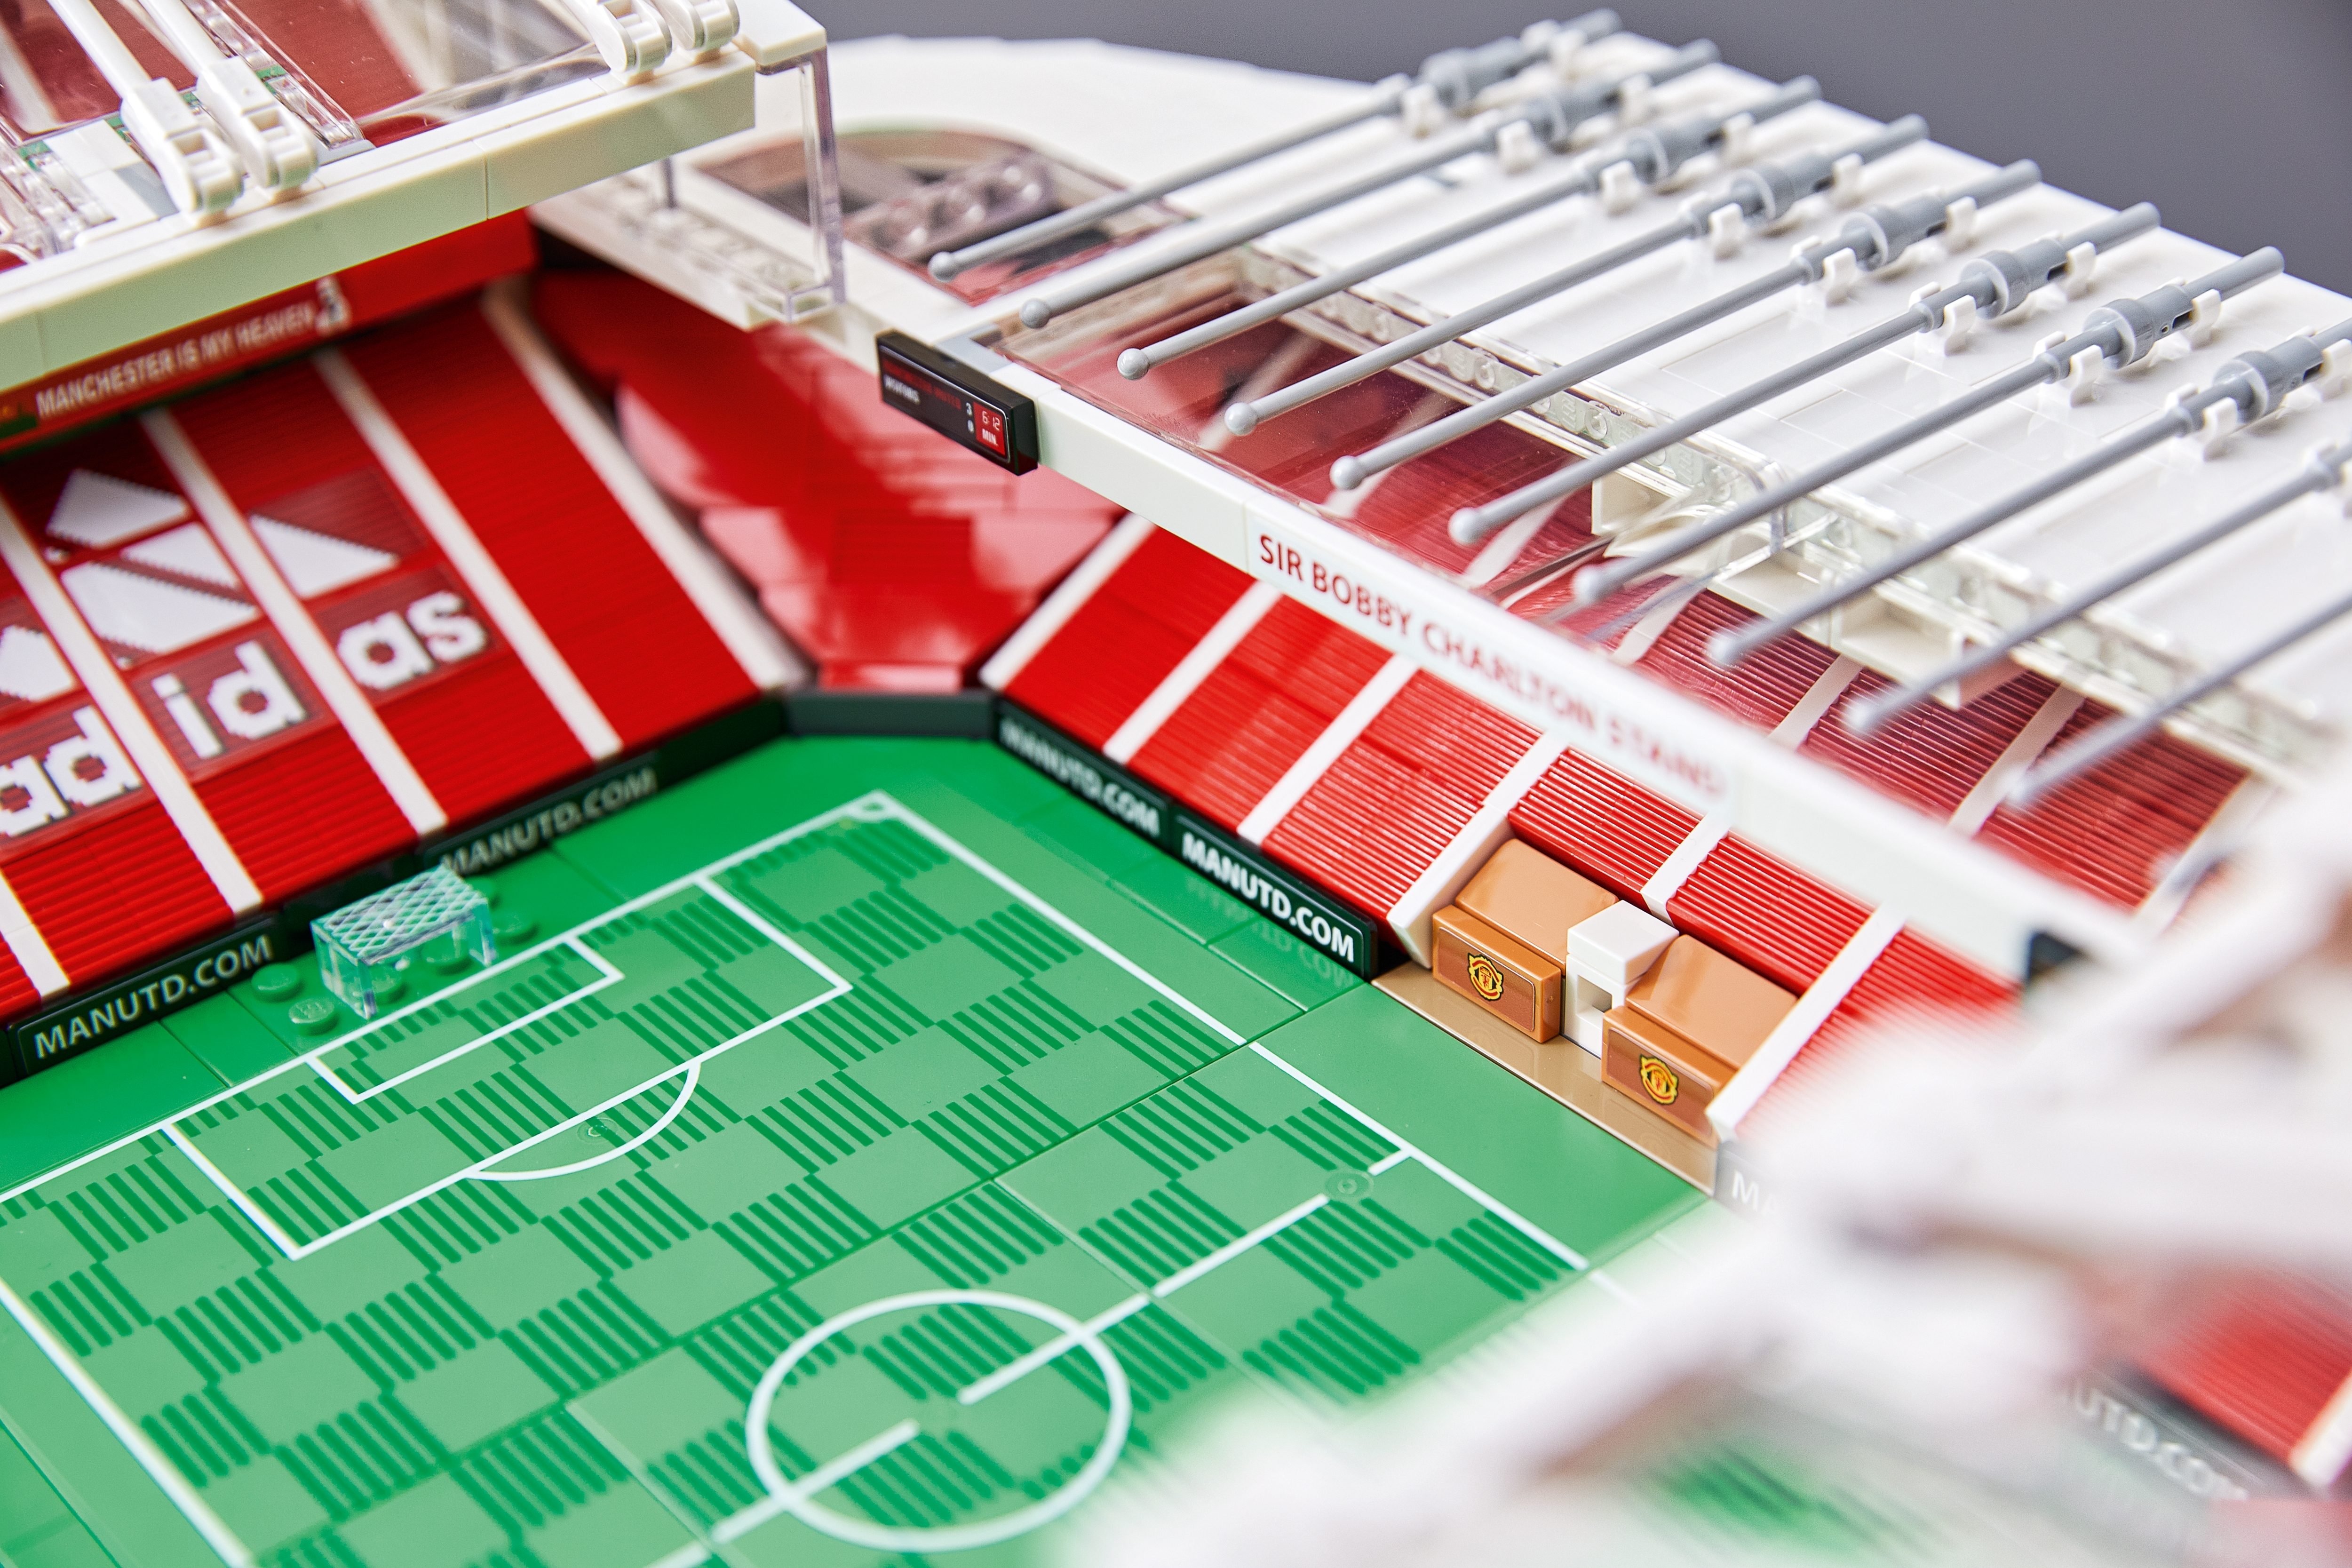 Lego reproduit le stade d'Old Trafford de Manchester United pour